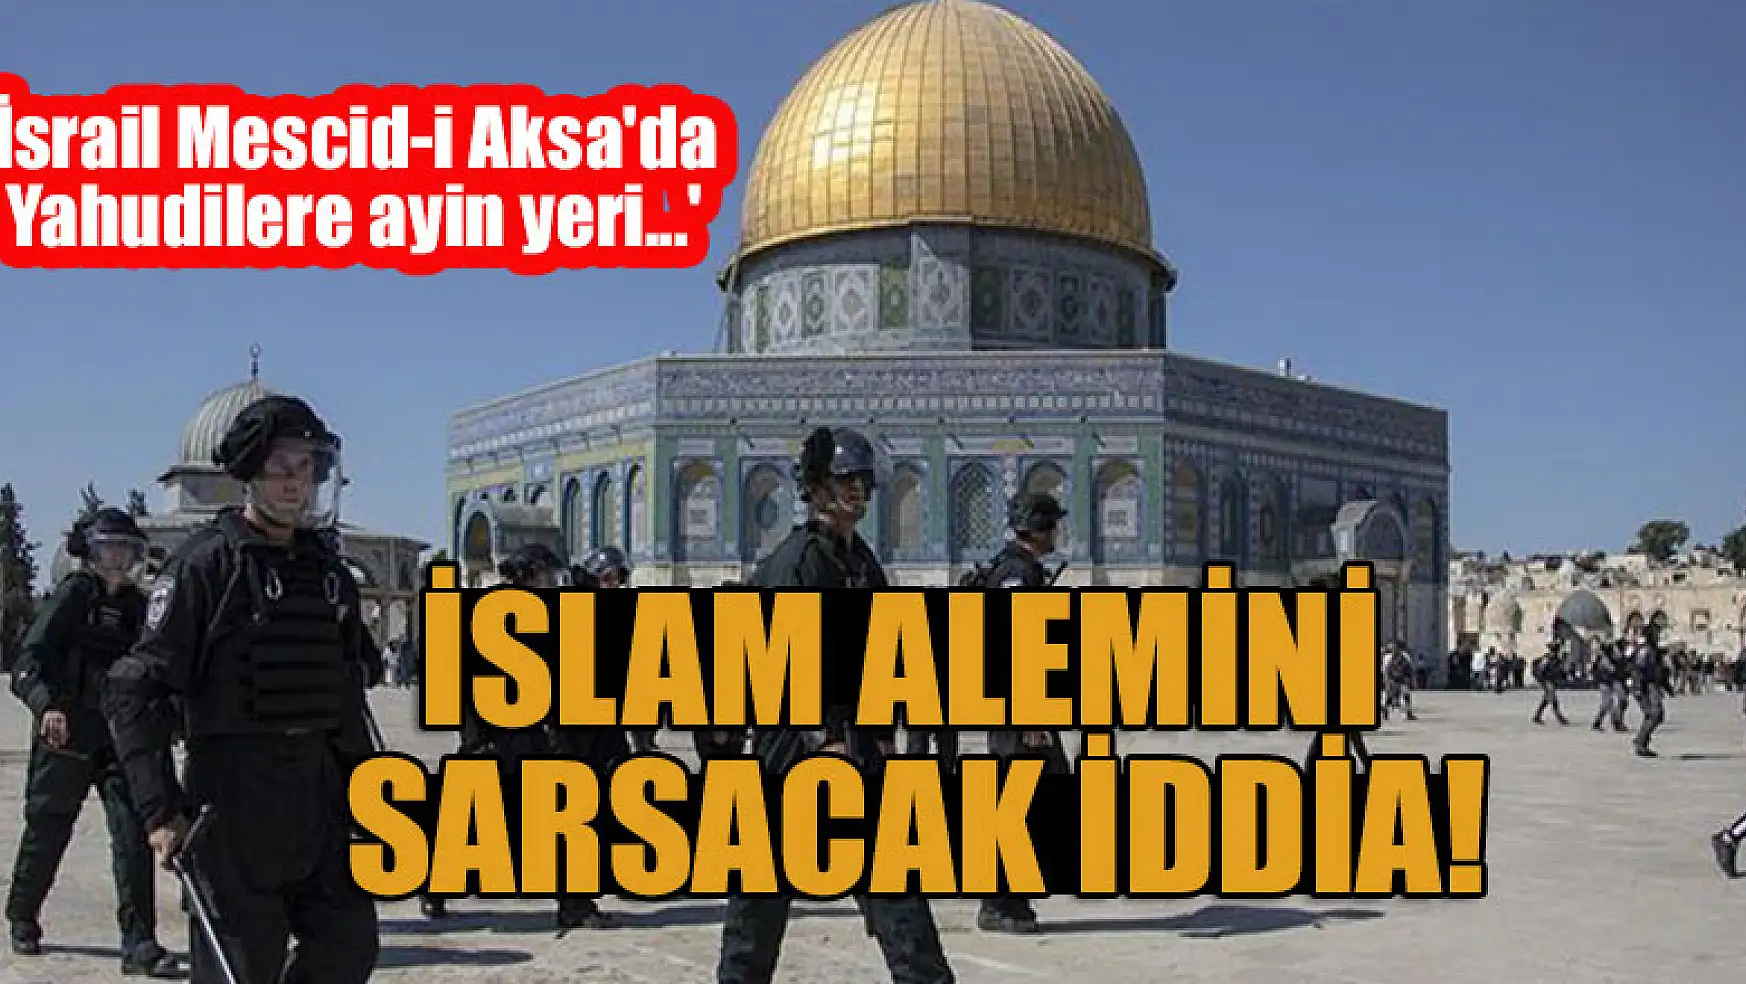 İslam alemini sarsacak iddia! 'İsrail Mescid-i Aksa'da Yahudilere ayin yeri...'